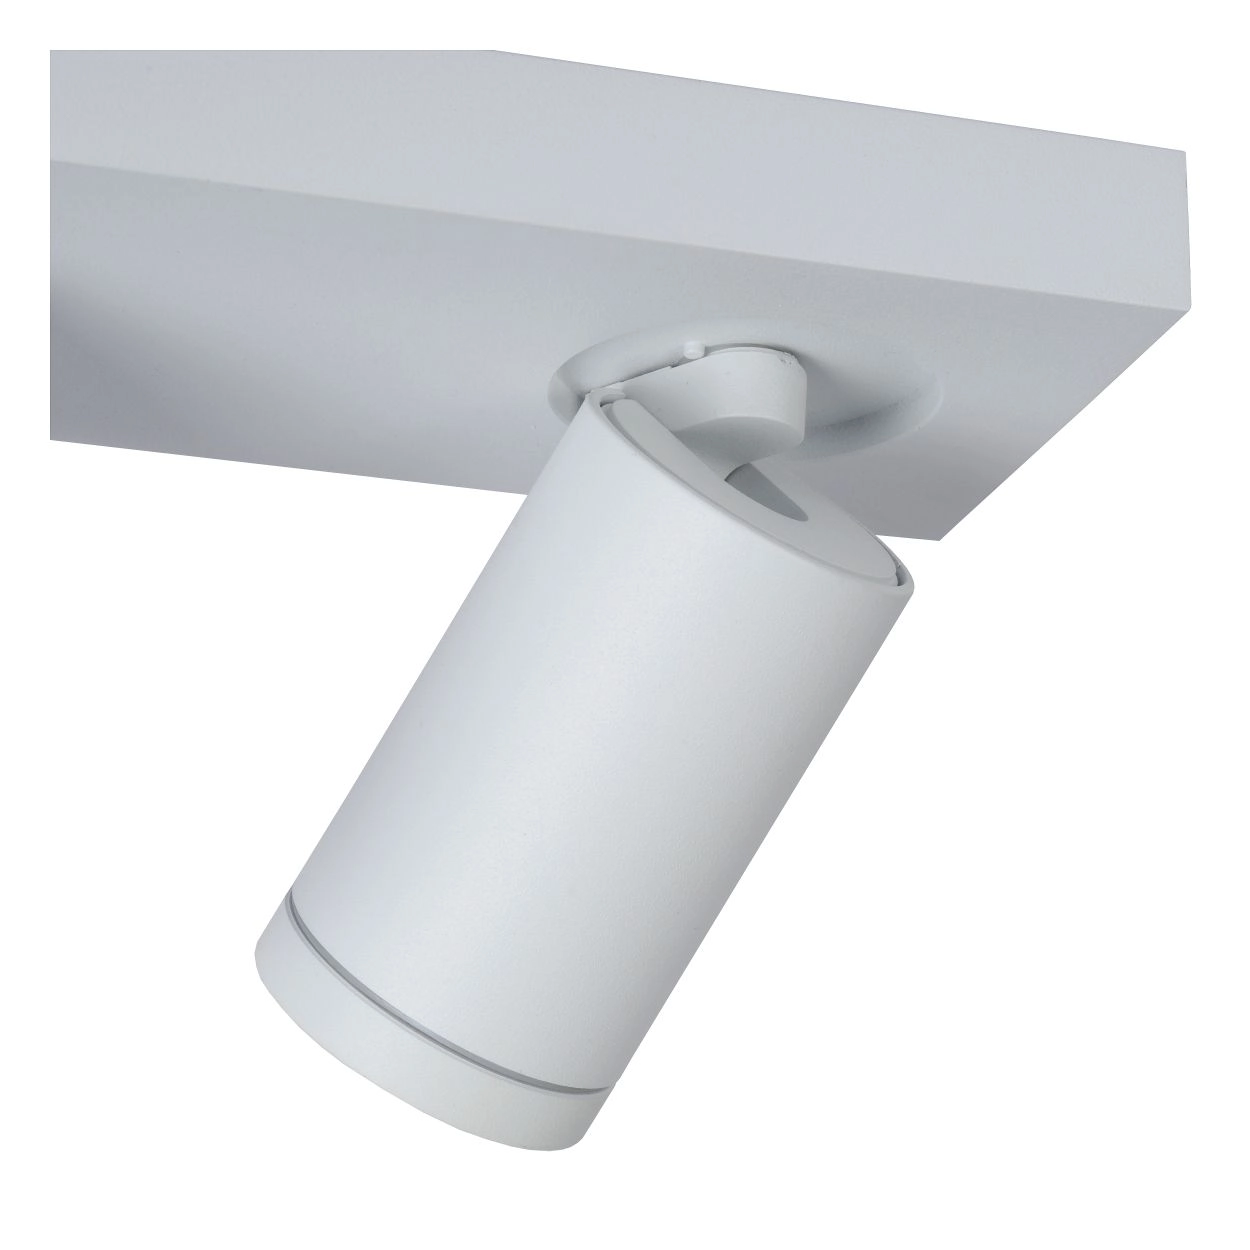 LU 09930/10/31 Lucide TAYLOR - Ceiling spotlight Bathroom - LED Dim to warm - GU10 - 2x5W 2200K/3000